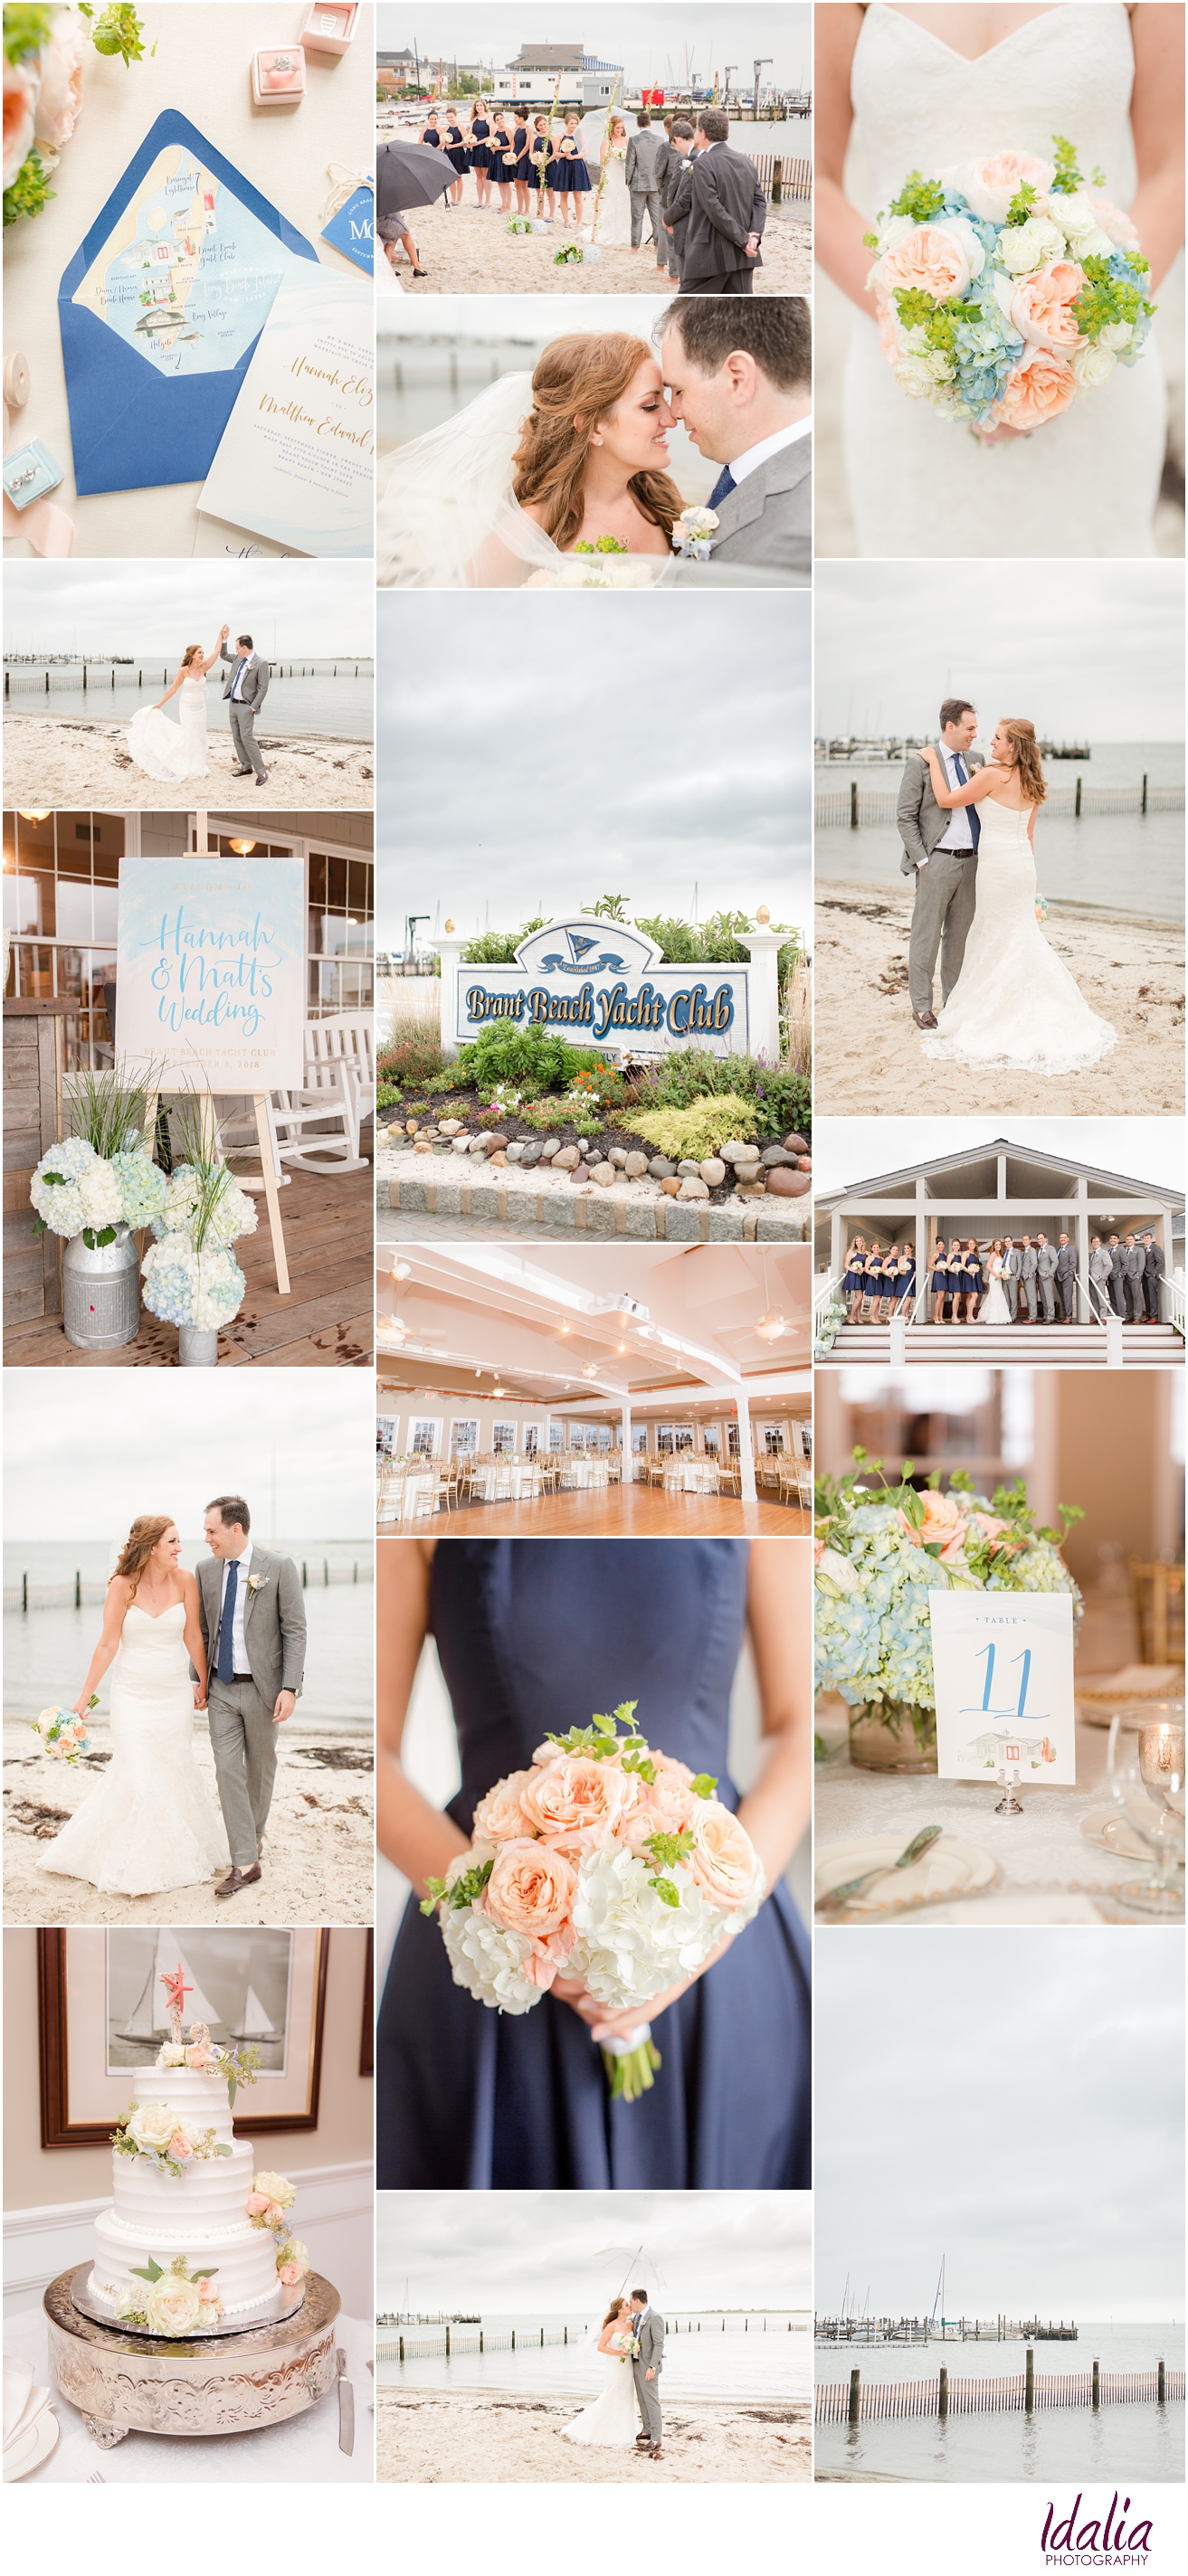 Brant Beach Yacht Club | NJ Wedding Venue | LBI Wedding Venue | Photos by Idalia Photography